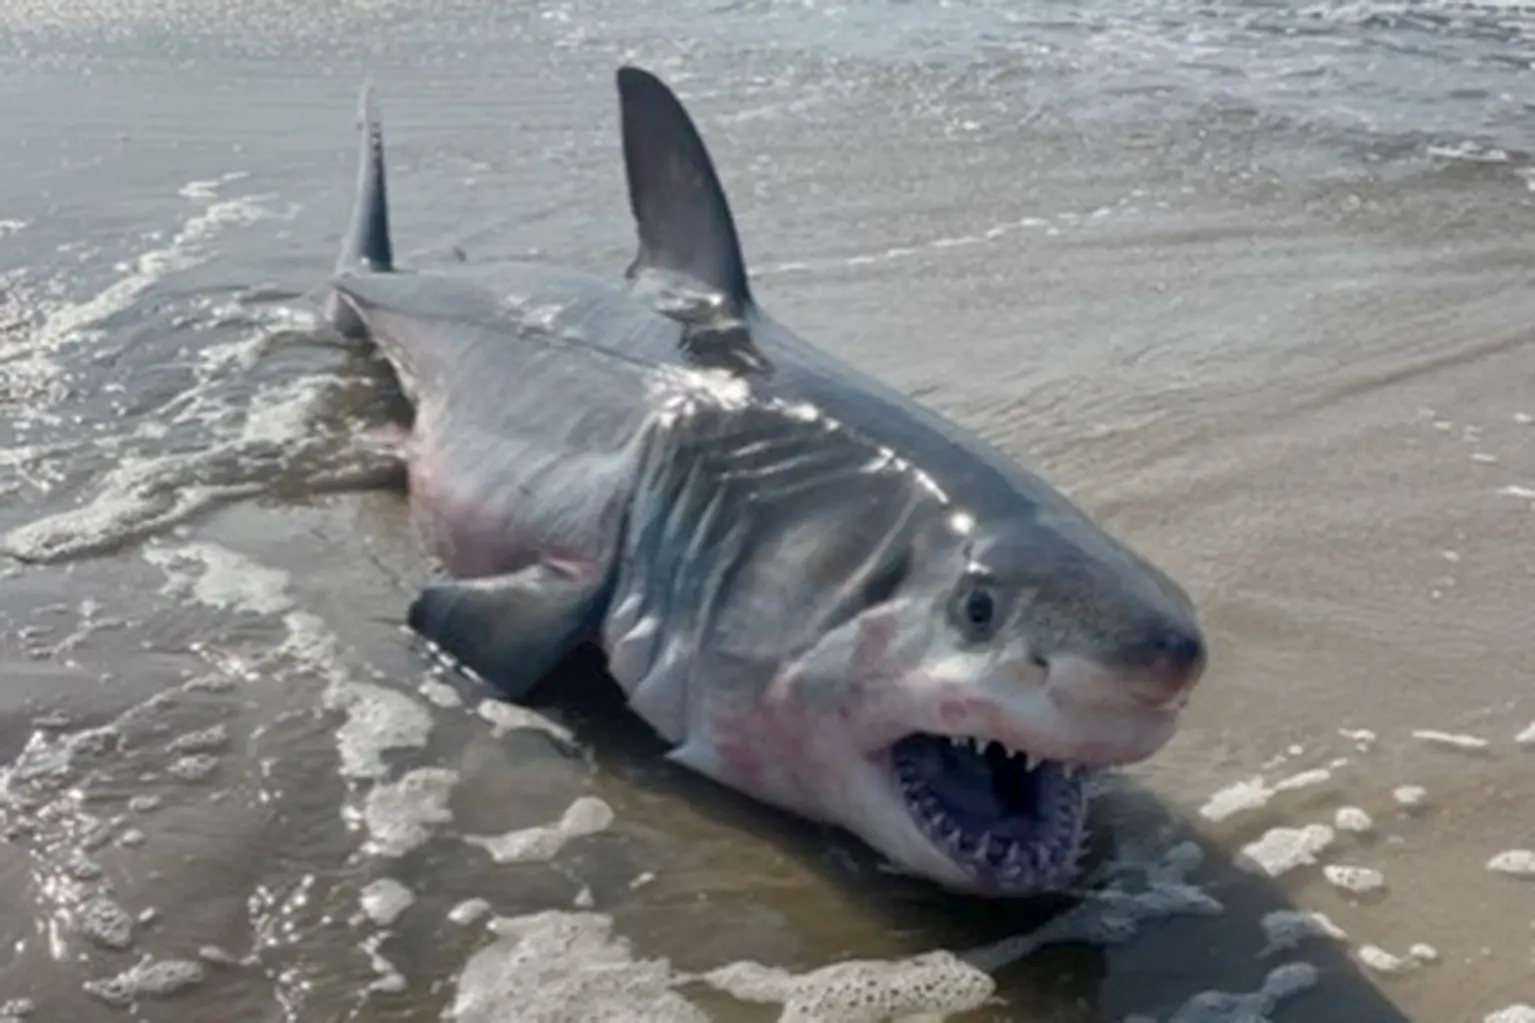 Tra le varie scene e gli attacchi di squali che sono stati registrati nell'area nelle ultime settimane, un residente ha assistito all'orribile vista di un animale morto in riva al mare.